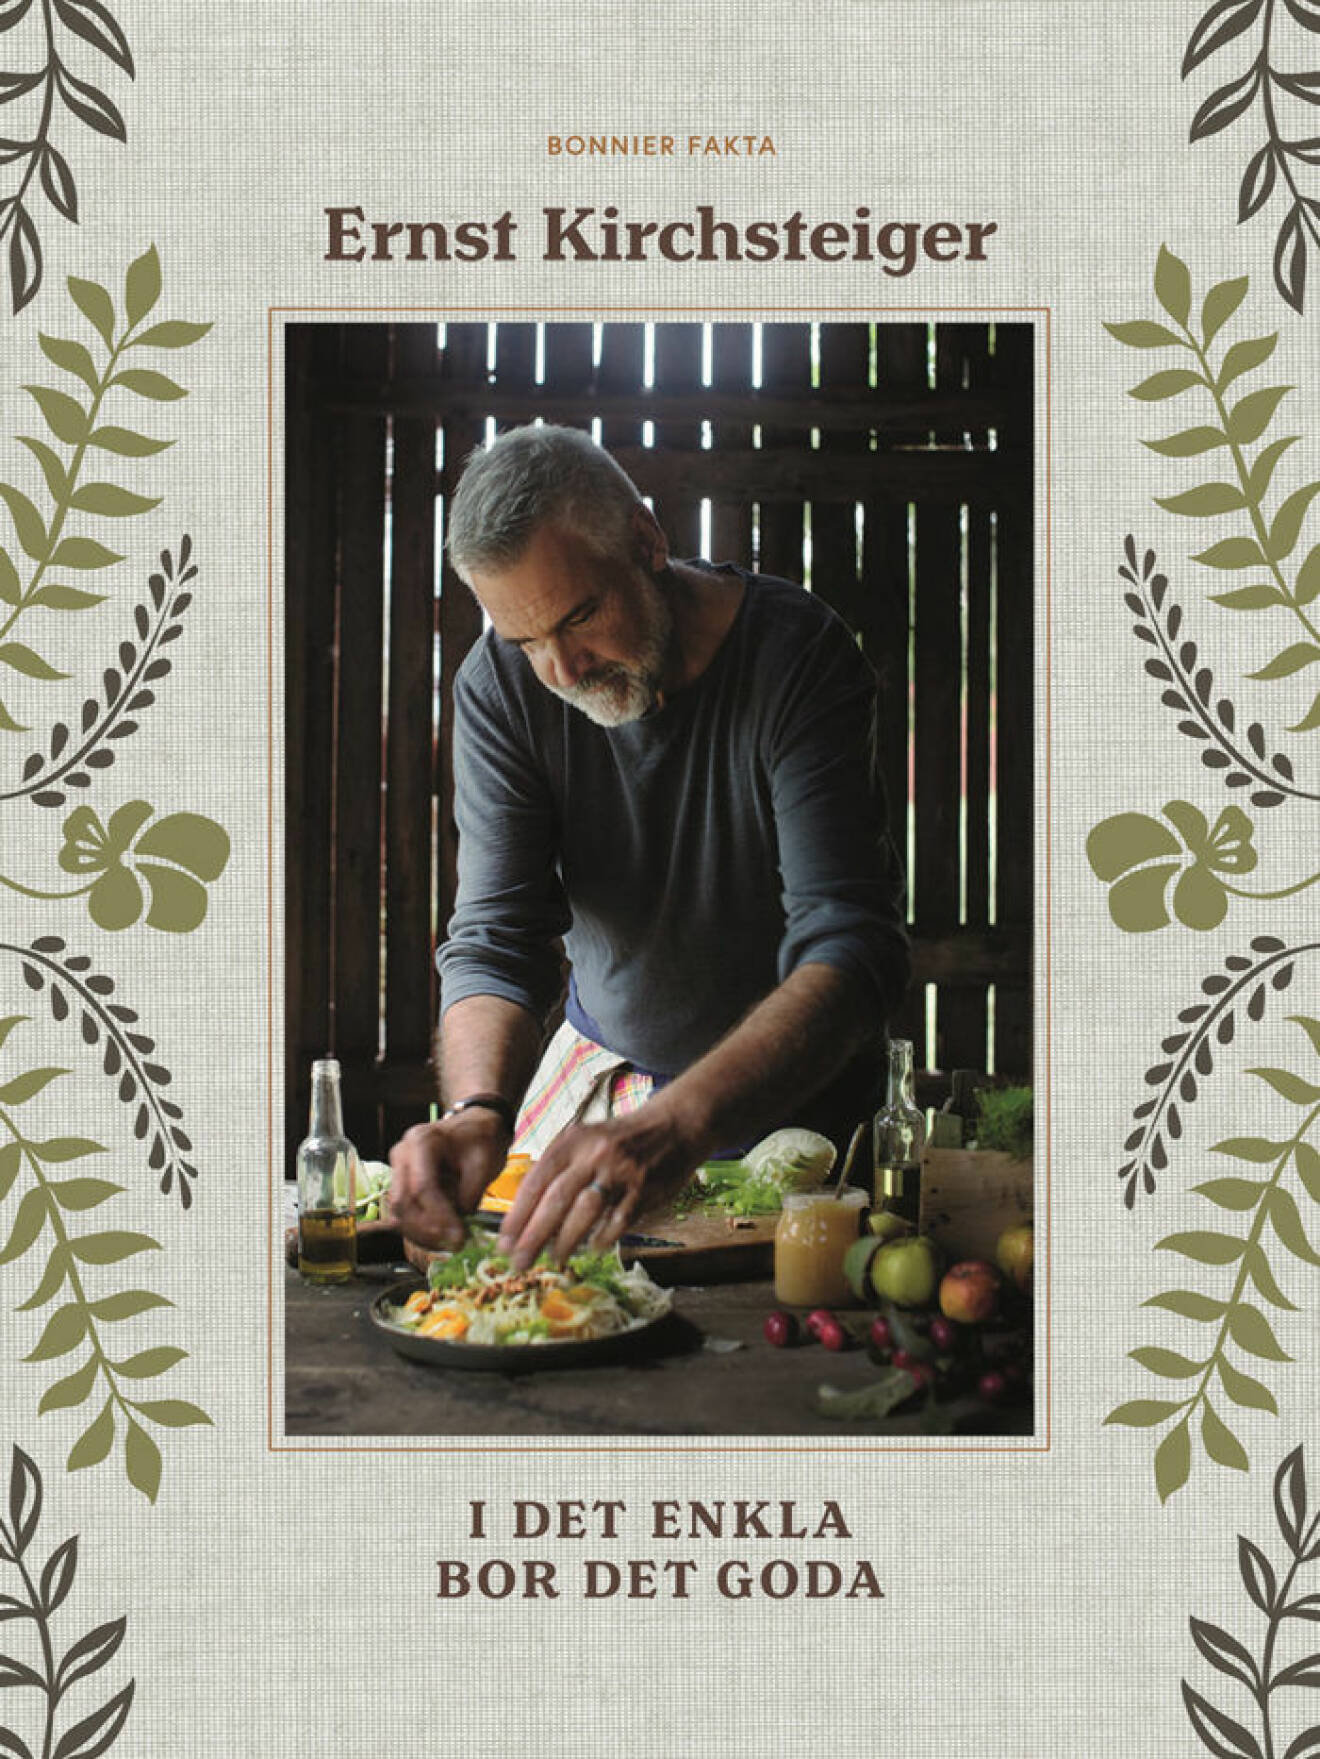 Ernst Kirchsteigers kokbok "I det enkla bor det goda" ges ut av Bonnier Fakta.